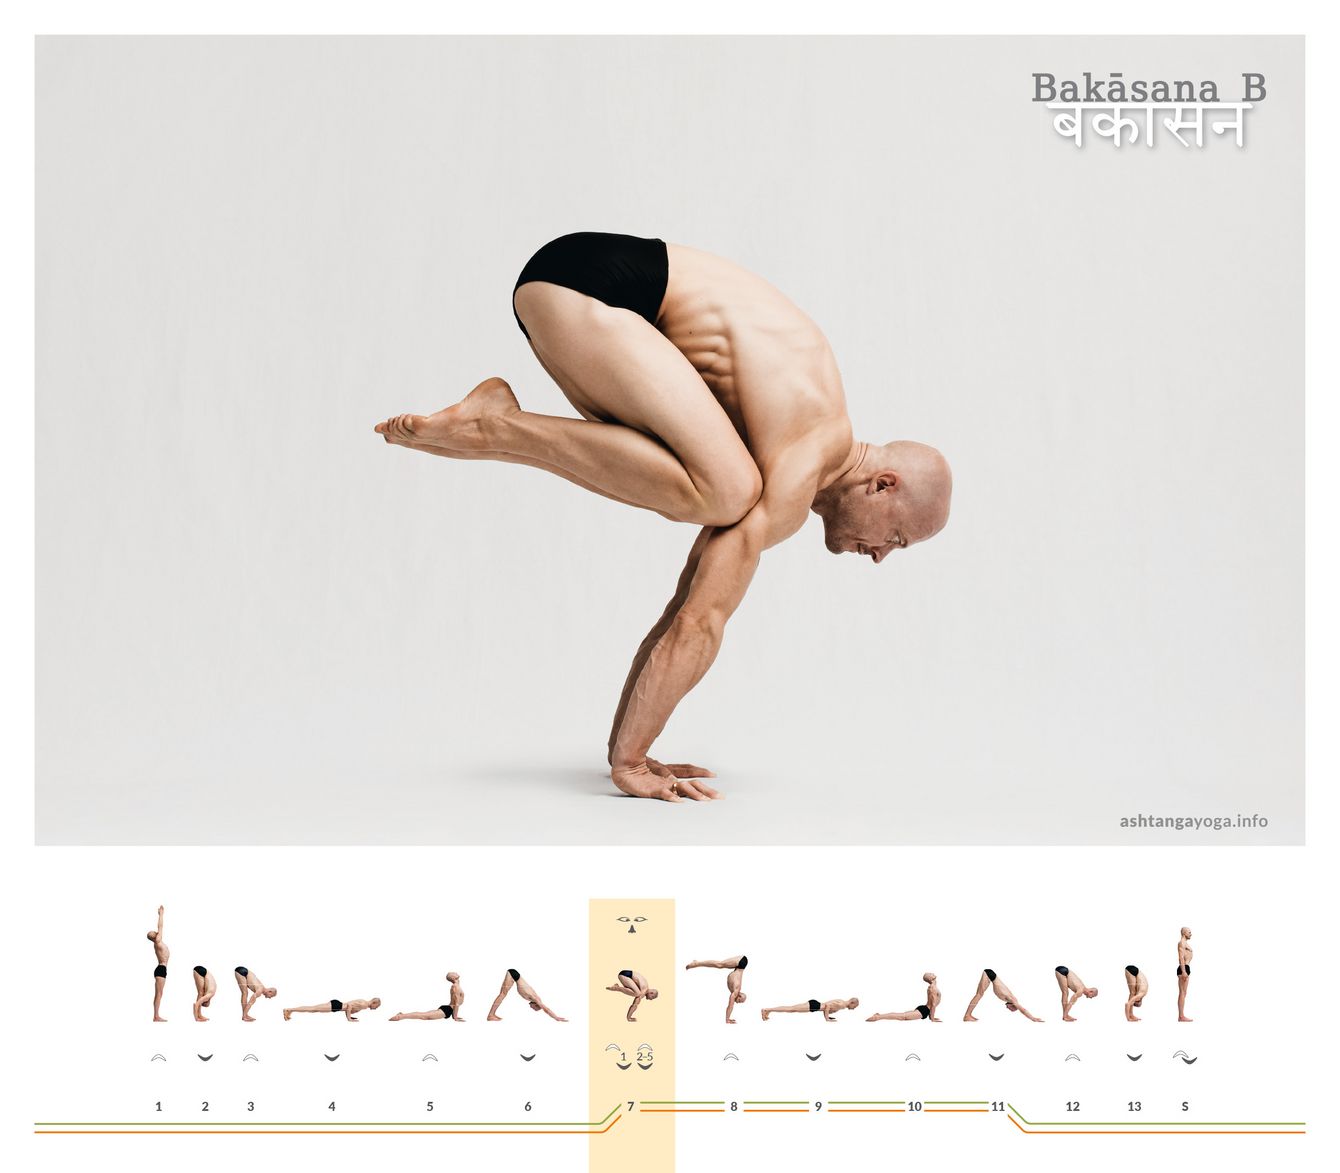 In der zweiten Version des “Kranich” kommt der*die Übende aus einer freien Armbalance, also von oben, in die Haltung. Wieder sind die Oberschenkel dicht an den Oberkörper gezogen - Bakasana.